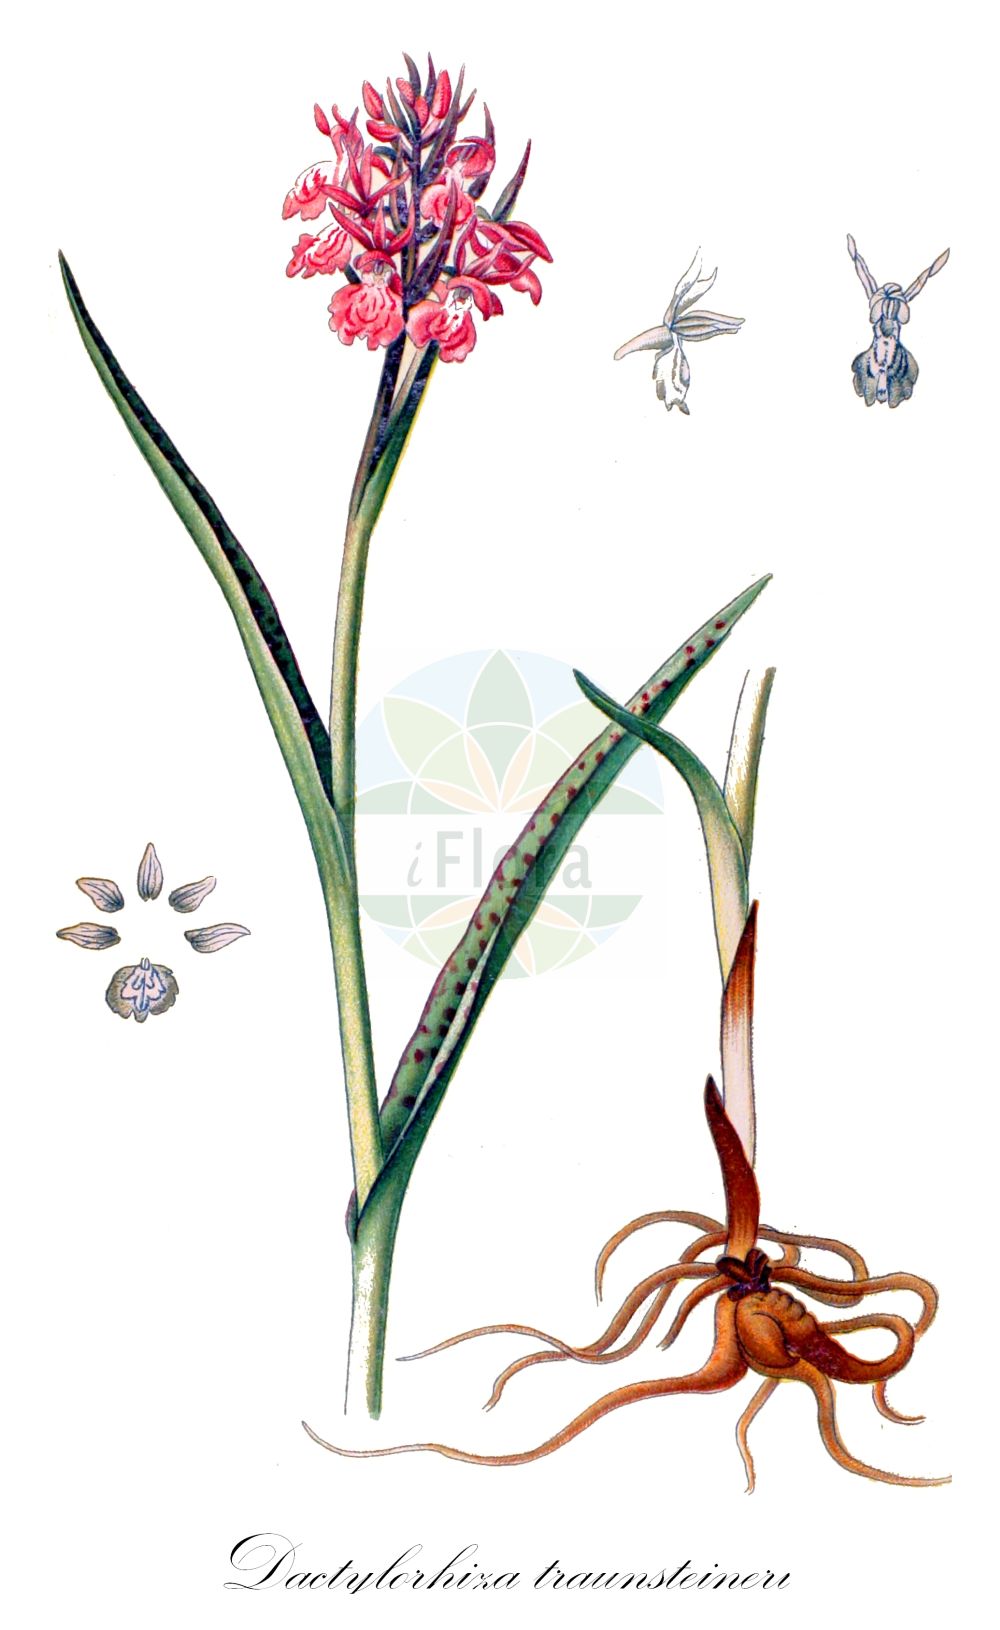 Historische Abbildung von Dactylorhiza traunsteineri (Traunsteiners Knabenkraut - Narrow-leaved Marsh-Orchid). Das Bild zeigt Blatt, Bluete, Frucht und Same. ---- Historical Drawing of Dactylorhiza traunsteineri (Traunsteiners Knabenkraut - Narrow-leaved Marsh-Orchid). The image is showing leaf, flower, fruit and seed.(Dactylorhiza traunsteineri,Traunsteiners Knabenkraut,Narrow-leaved Marsh-Orchid,Dactylorchis traunsteineri,Dactylorhiza traunsteineri,Orchis traunsteineri,Traunsteiners Knabenkraut,Traunsteiners Kuckucksblume,Narrow-leaved Marsh-Orchid,Broad-leaved Marsh Orchid,Common Marsh Orchid,Fan Orchid,Irish Marsh-orchid,Western Marsh Orchid,Dactylorhiza,Knabenkraut,Keyflower,Orchidaceae,Knabenkrautgewächse,Orchid family,Blatt,Bluete,Frucht,Same,leaf,flower,fruit,seed,Schulze (1892-1894))